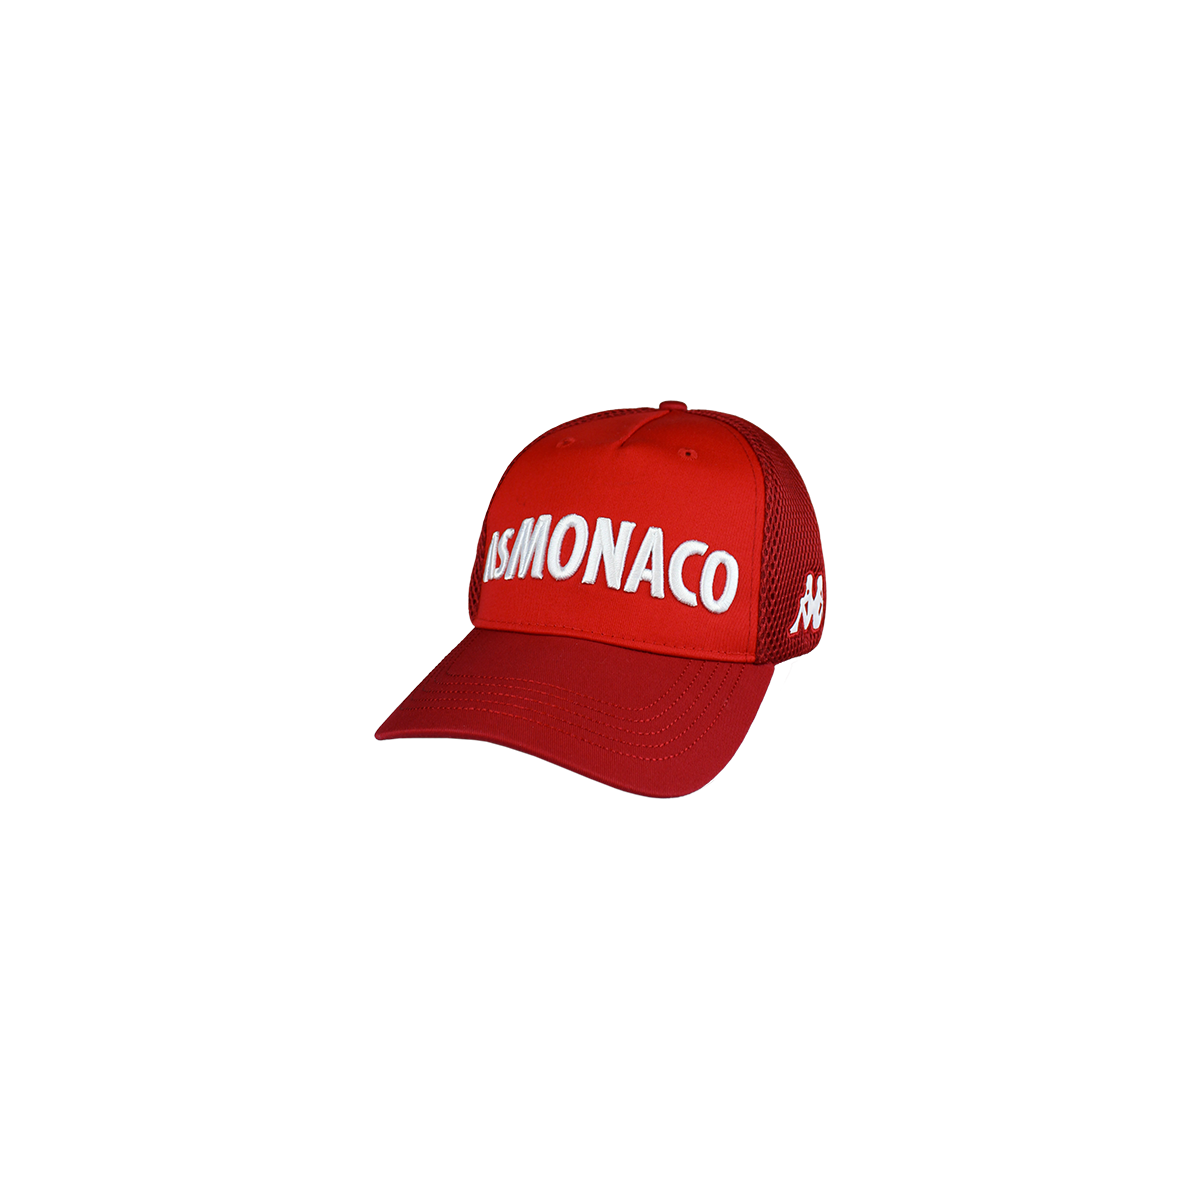 Gorra Asety 3 As Monaco Rojo Hombre - Imagen 1